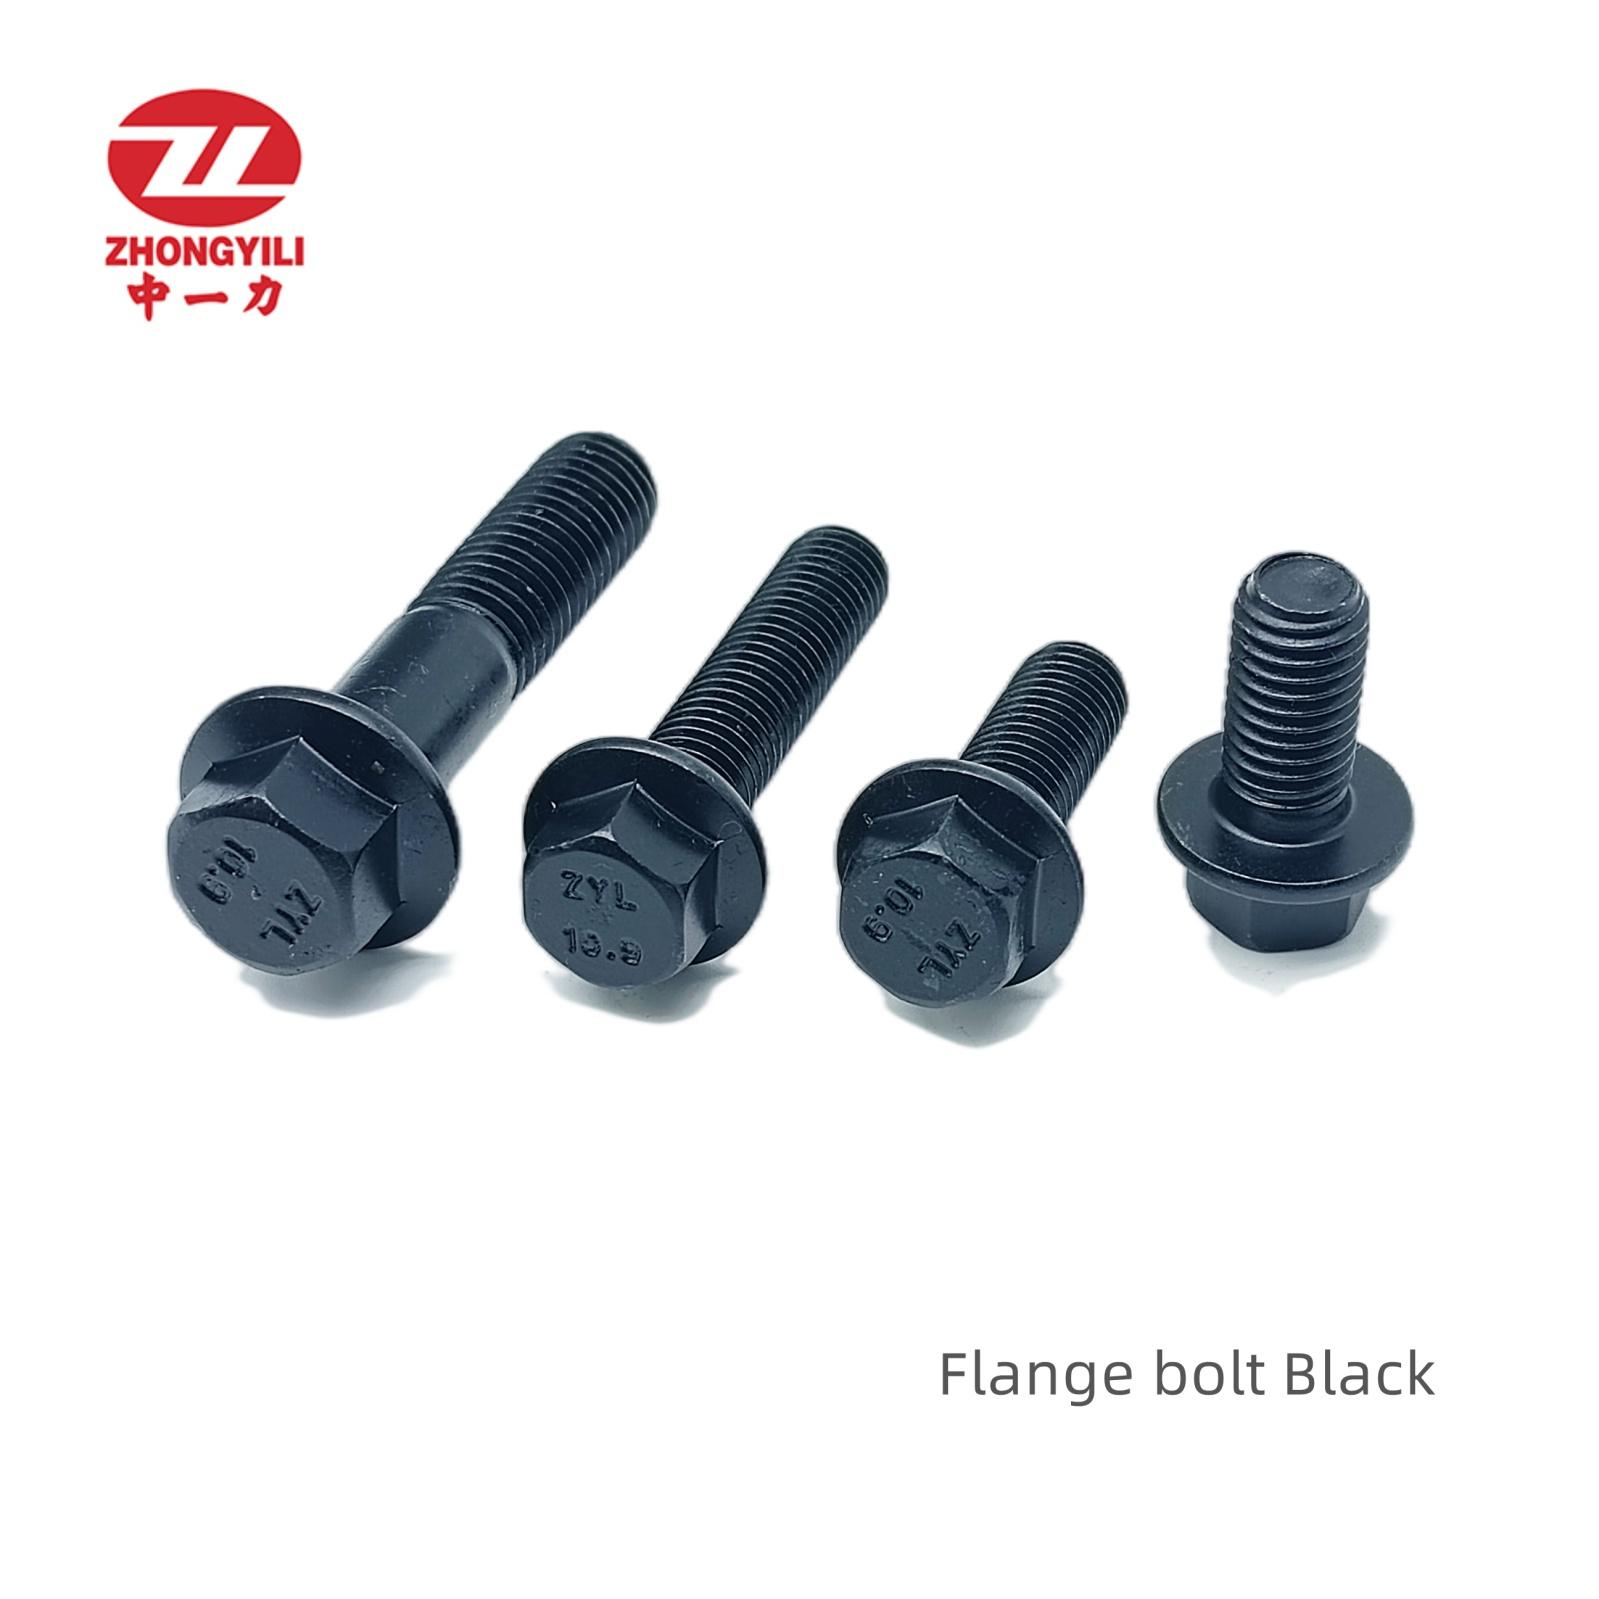 High tensile hex flange bolt DIN6921 gr10.9 Black Featured Image